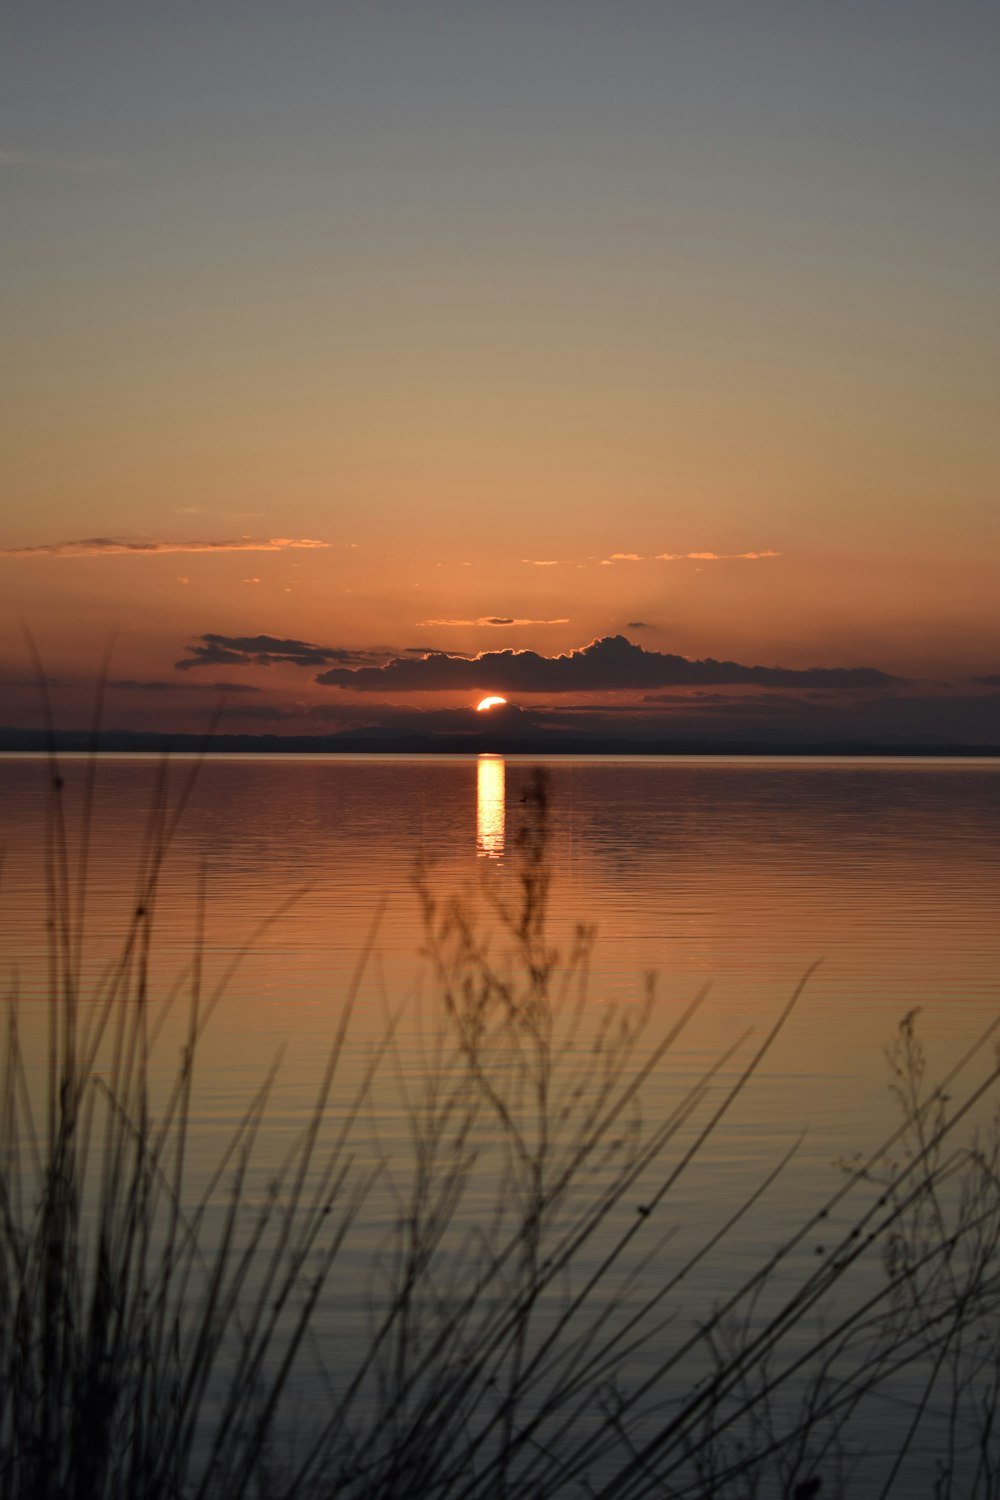 Le soleil se couche sur un lac calme